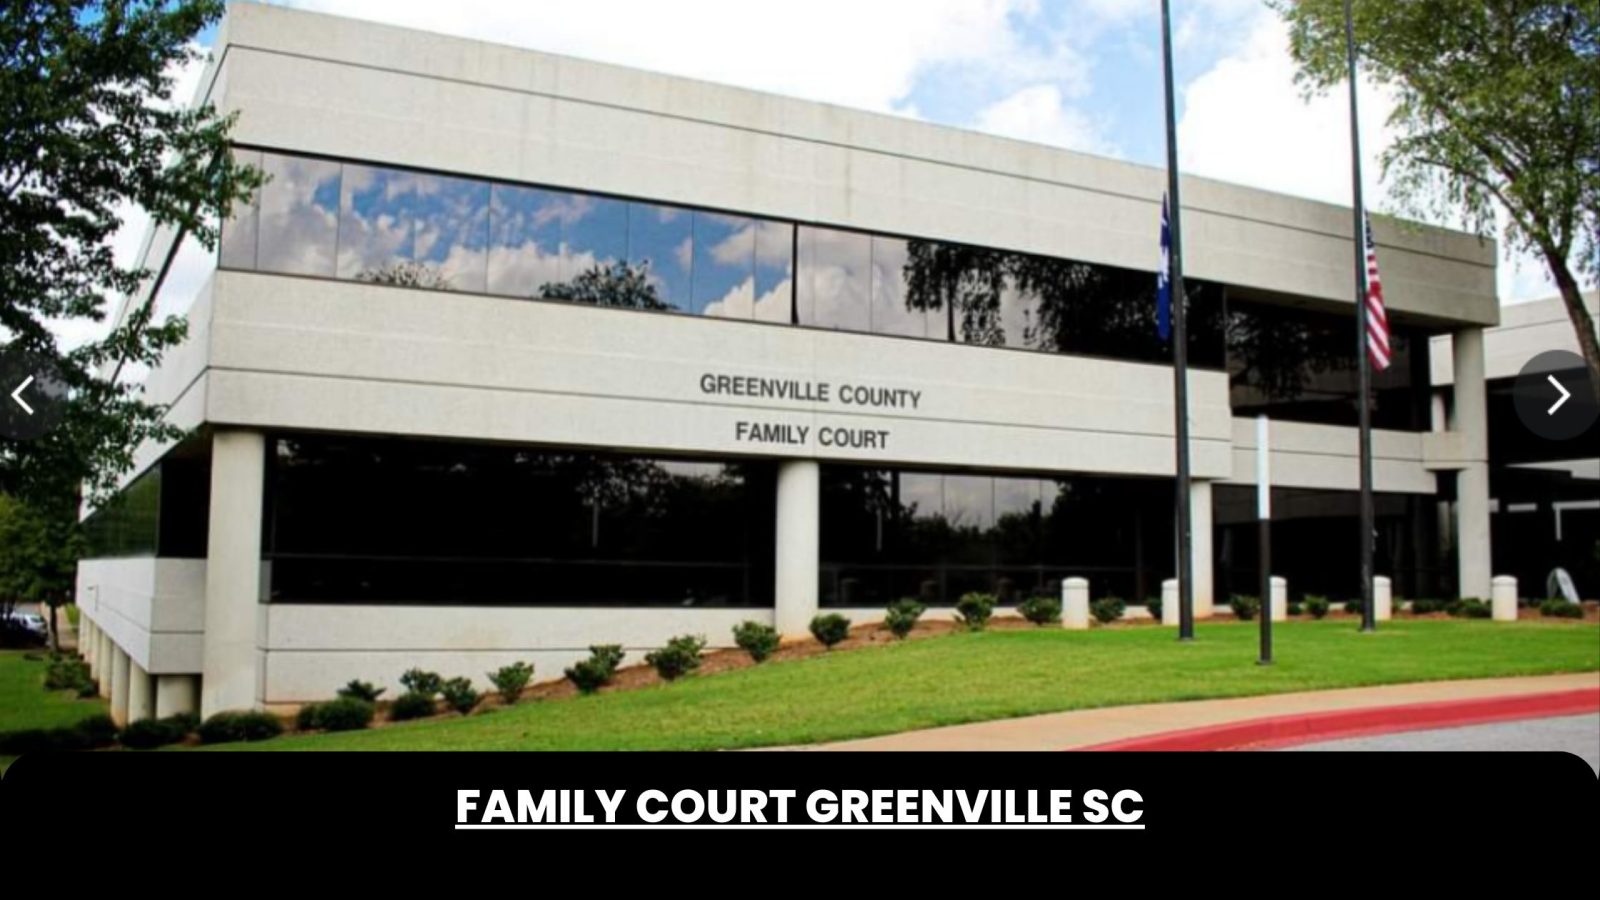 Family Court Greenville SC